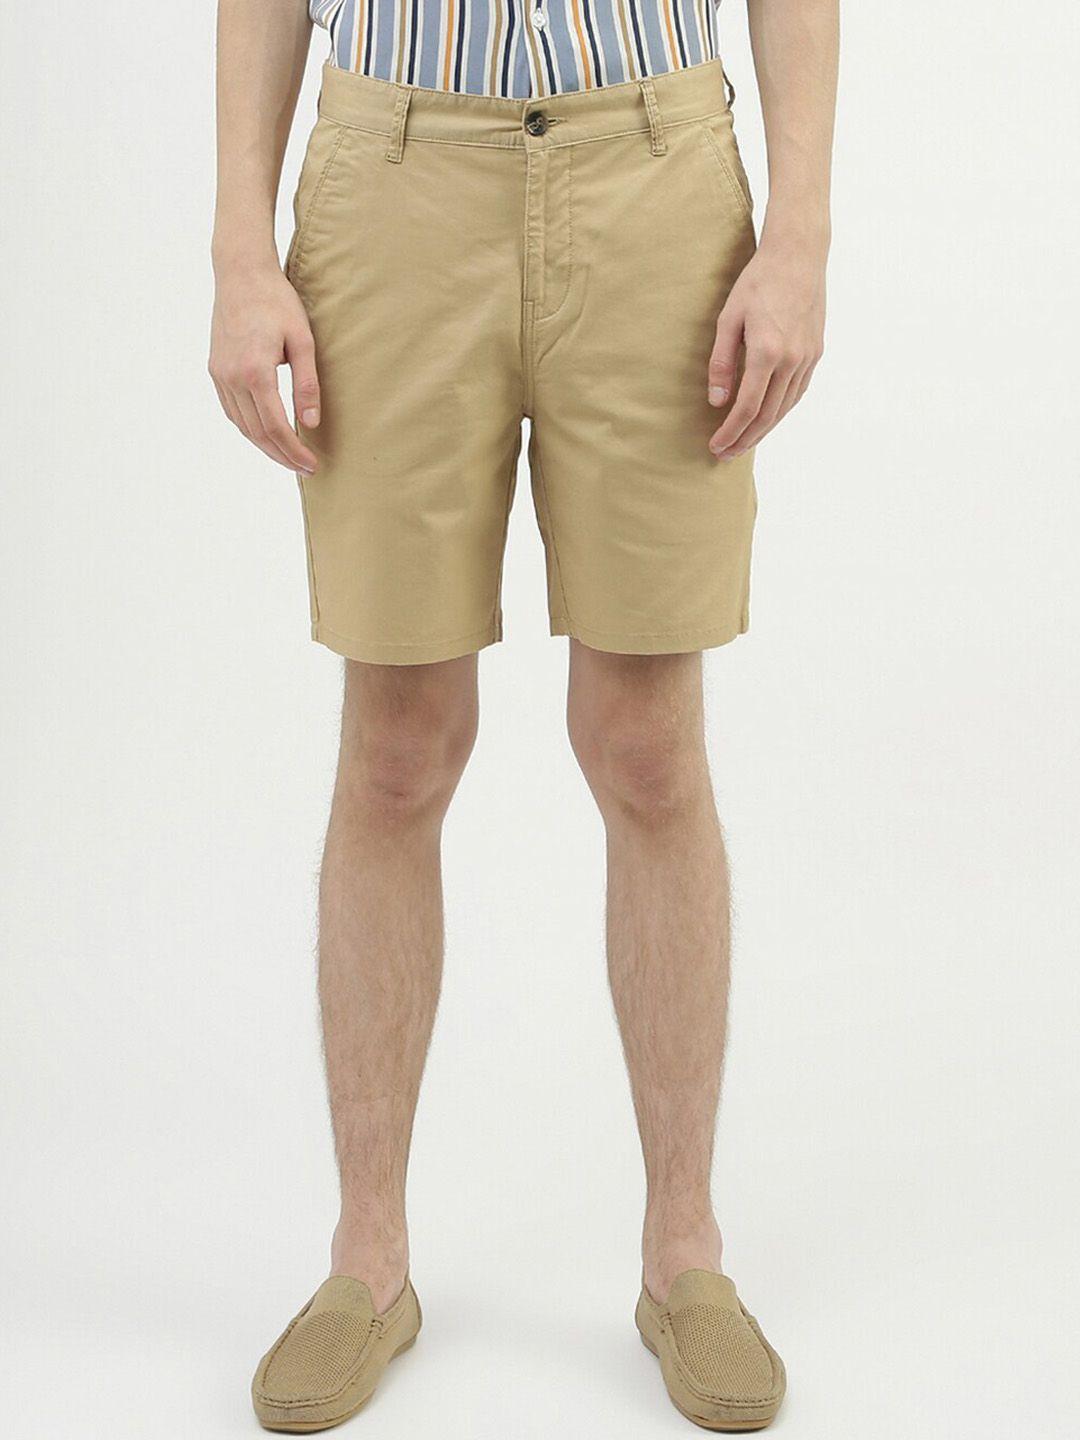 united colors of benetton men slim fit cotton shorts